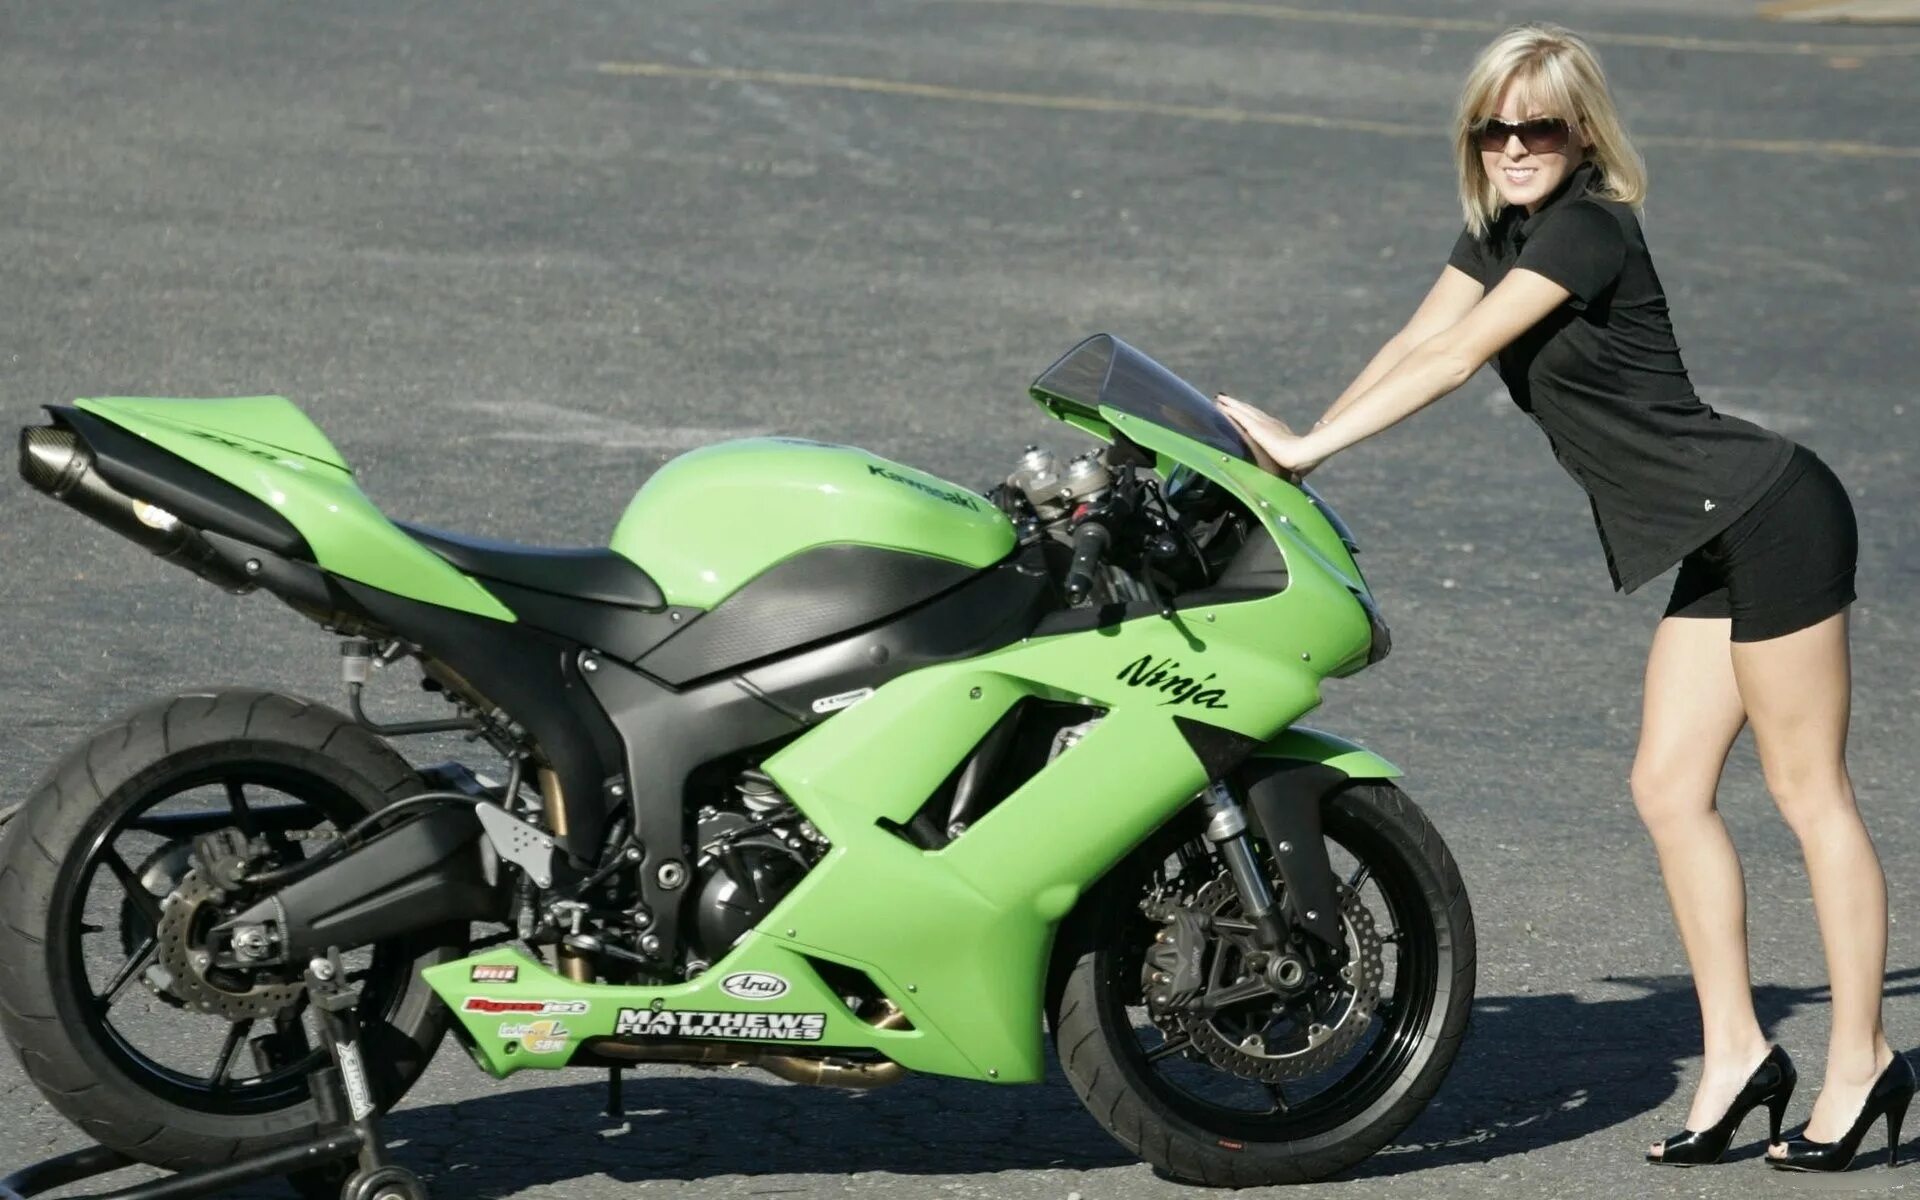 Kawasaki Ninja ZX-10r девушки. Спортбайк Кавасаки ниндзя 400 с девушкам. Кавасаки ниндзя зеленый мотоцикл девушка. Девушка на Кавасаки ниндзя.